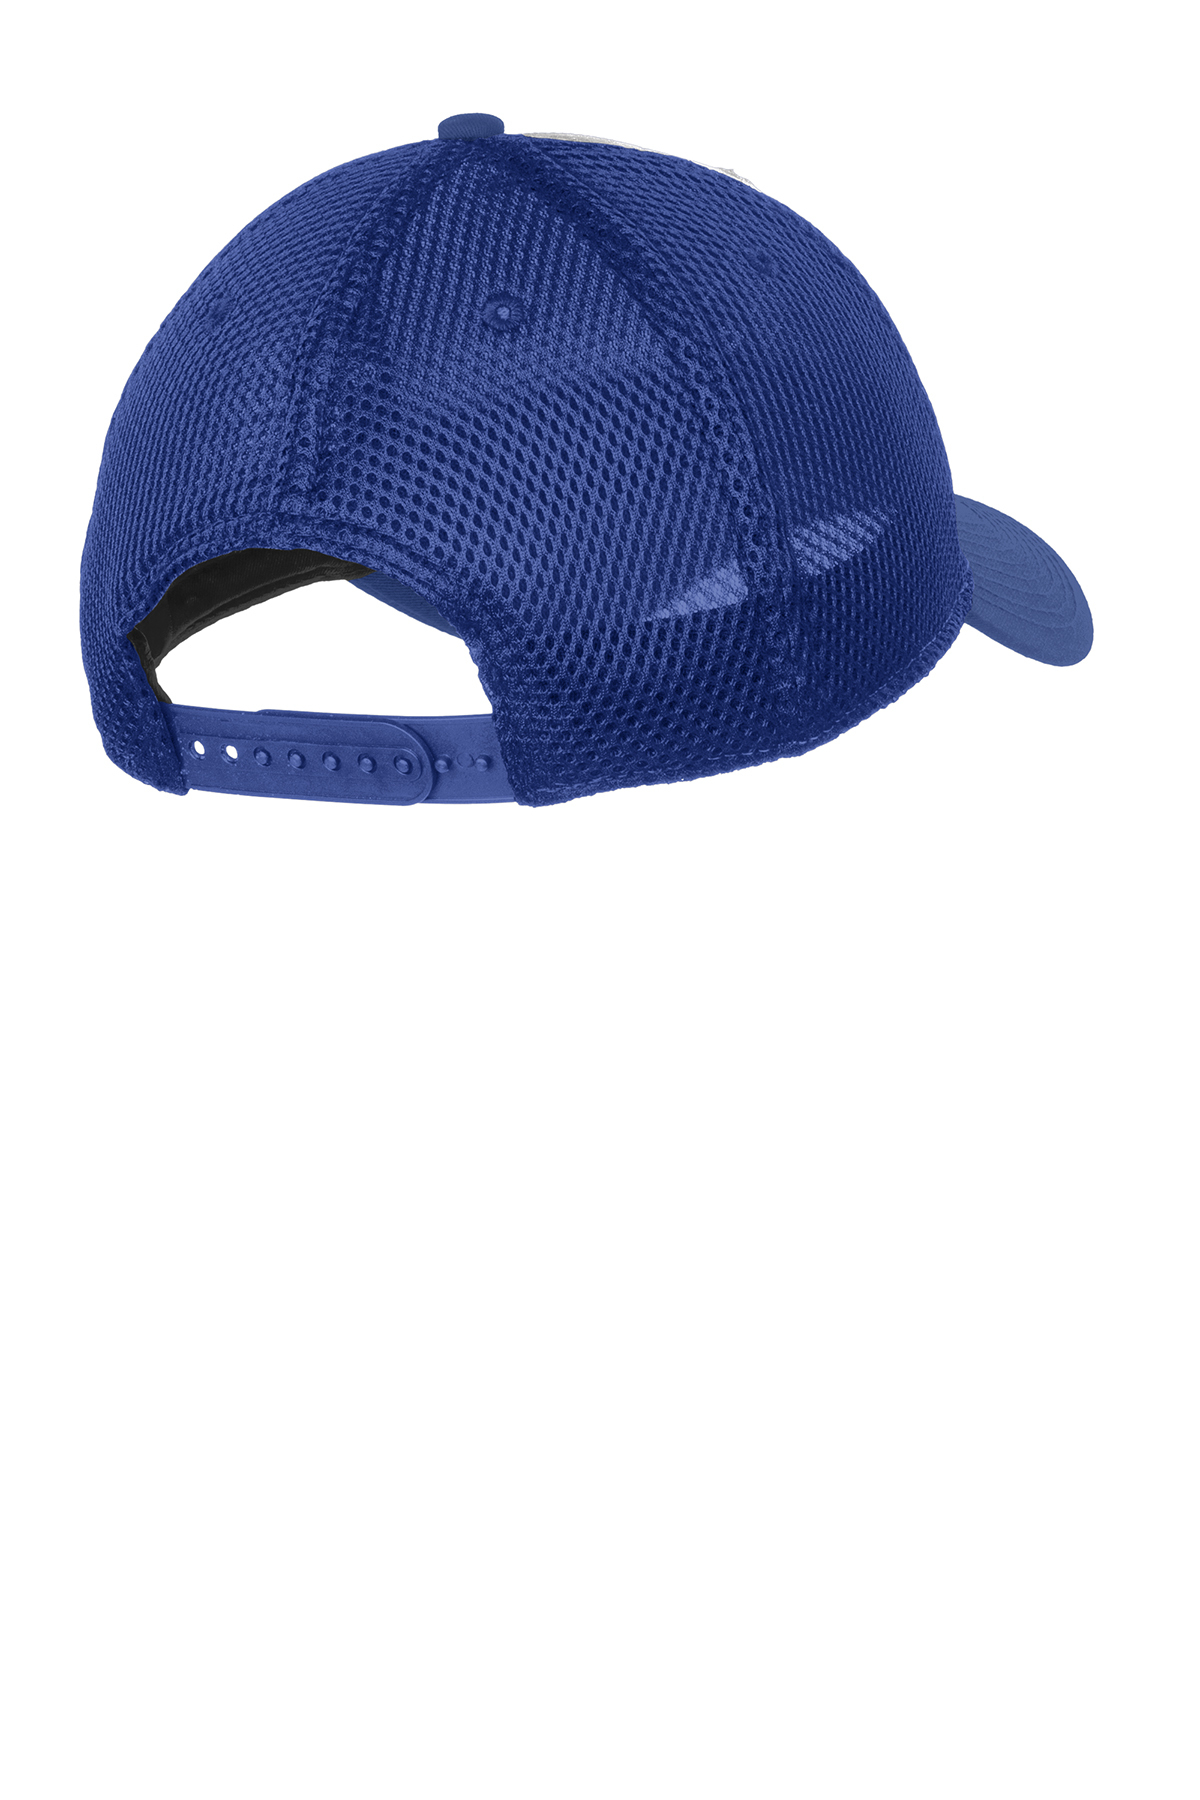 New Era - Snapback Contrast Front Mesh Cap | Product | Company Casuals